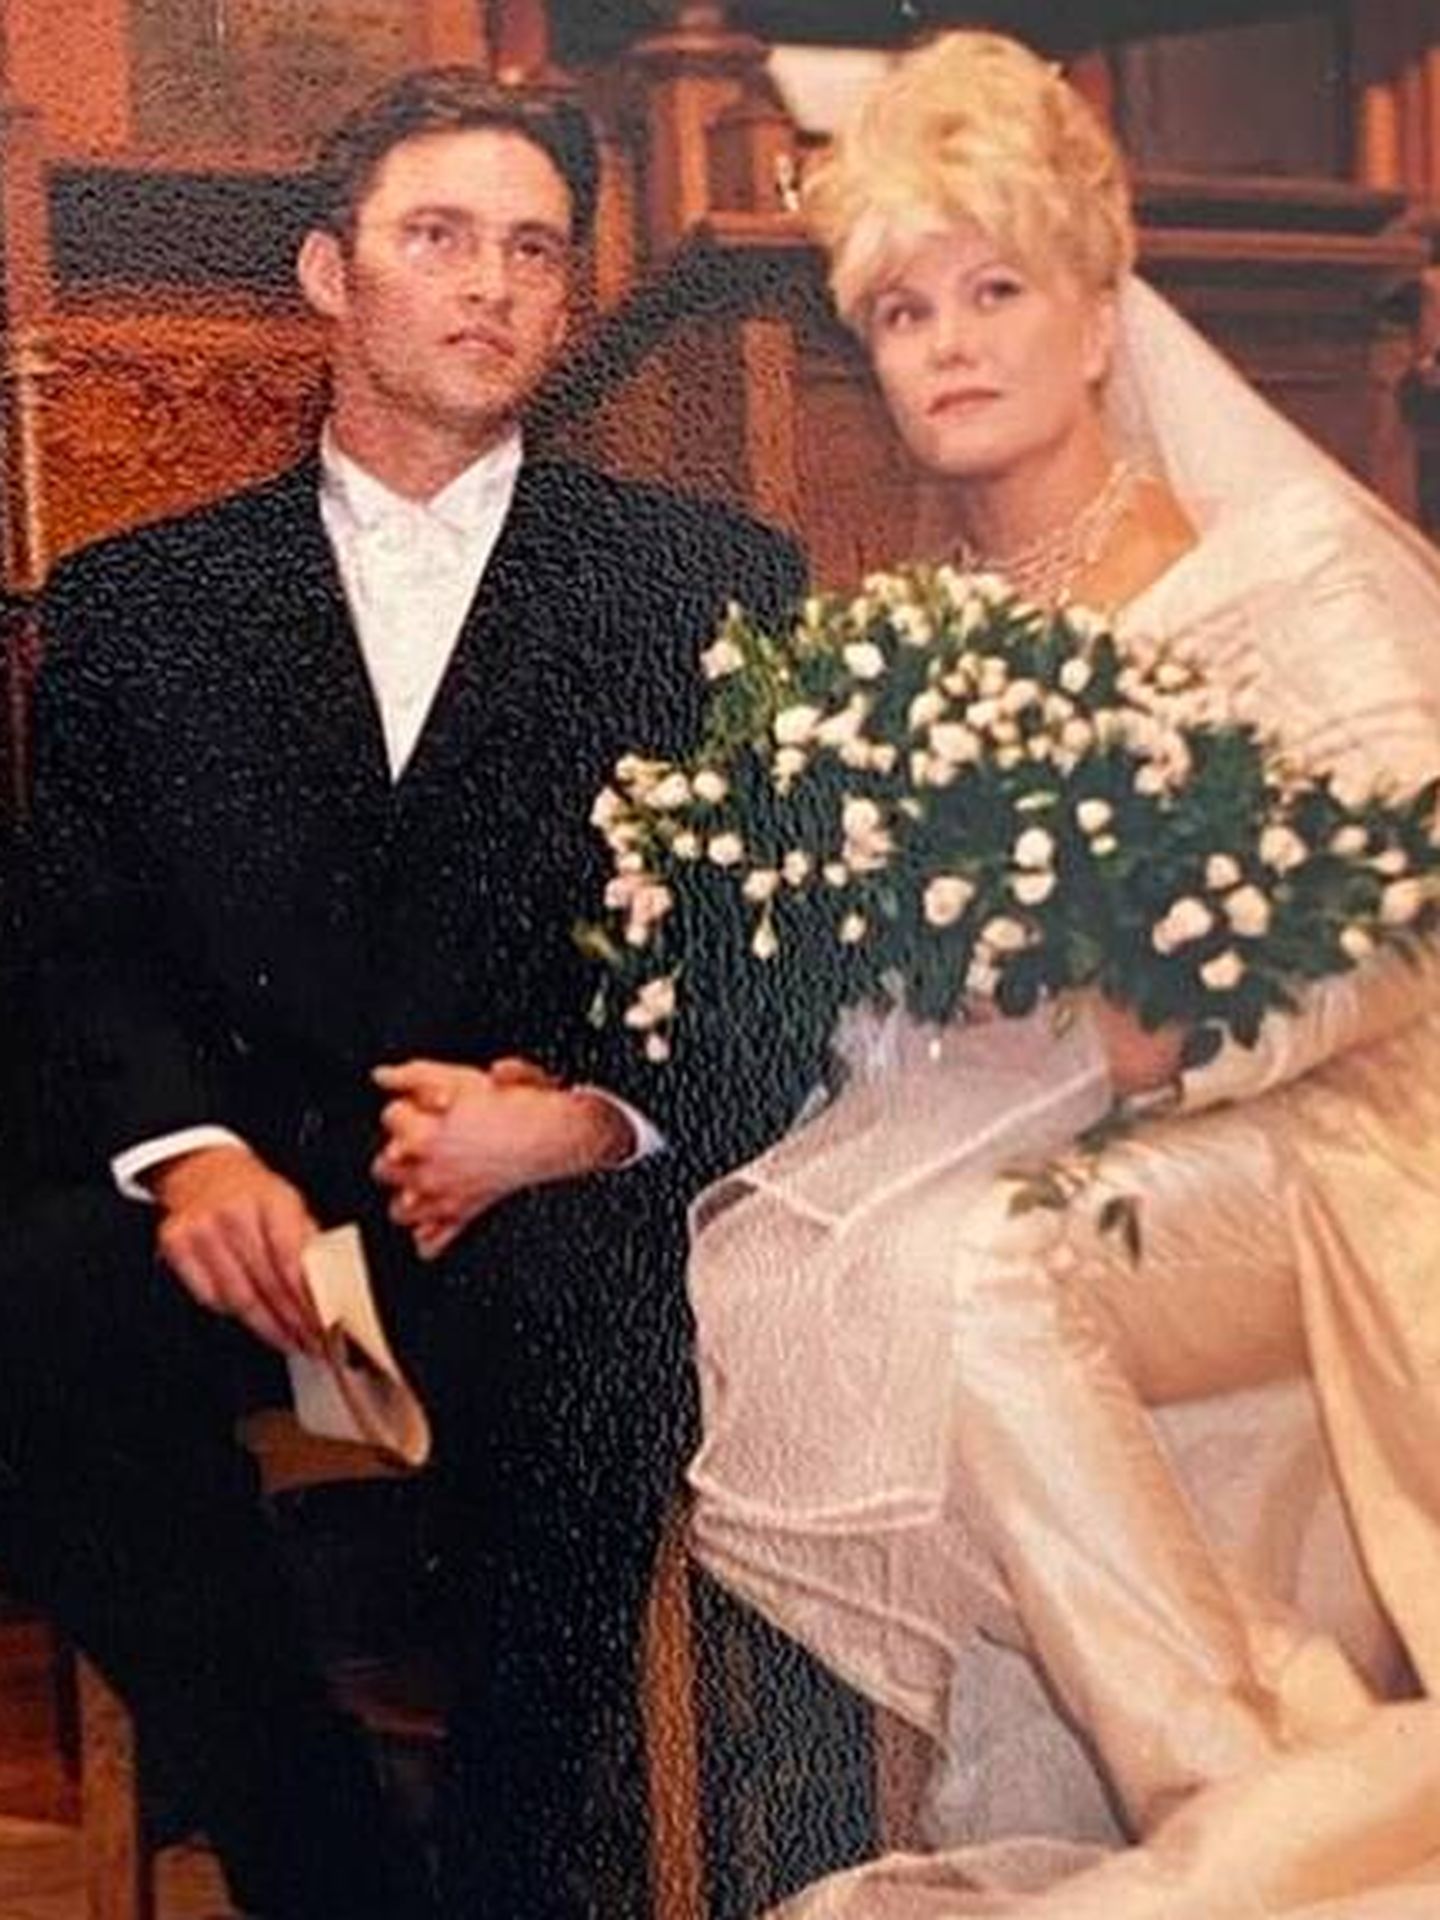 La boda de Hugh Jackman y Deborra-Lee Furness. (Instagram/@thehughjackman)